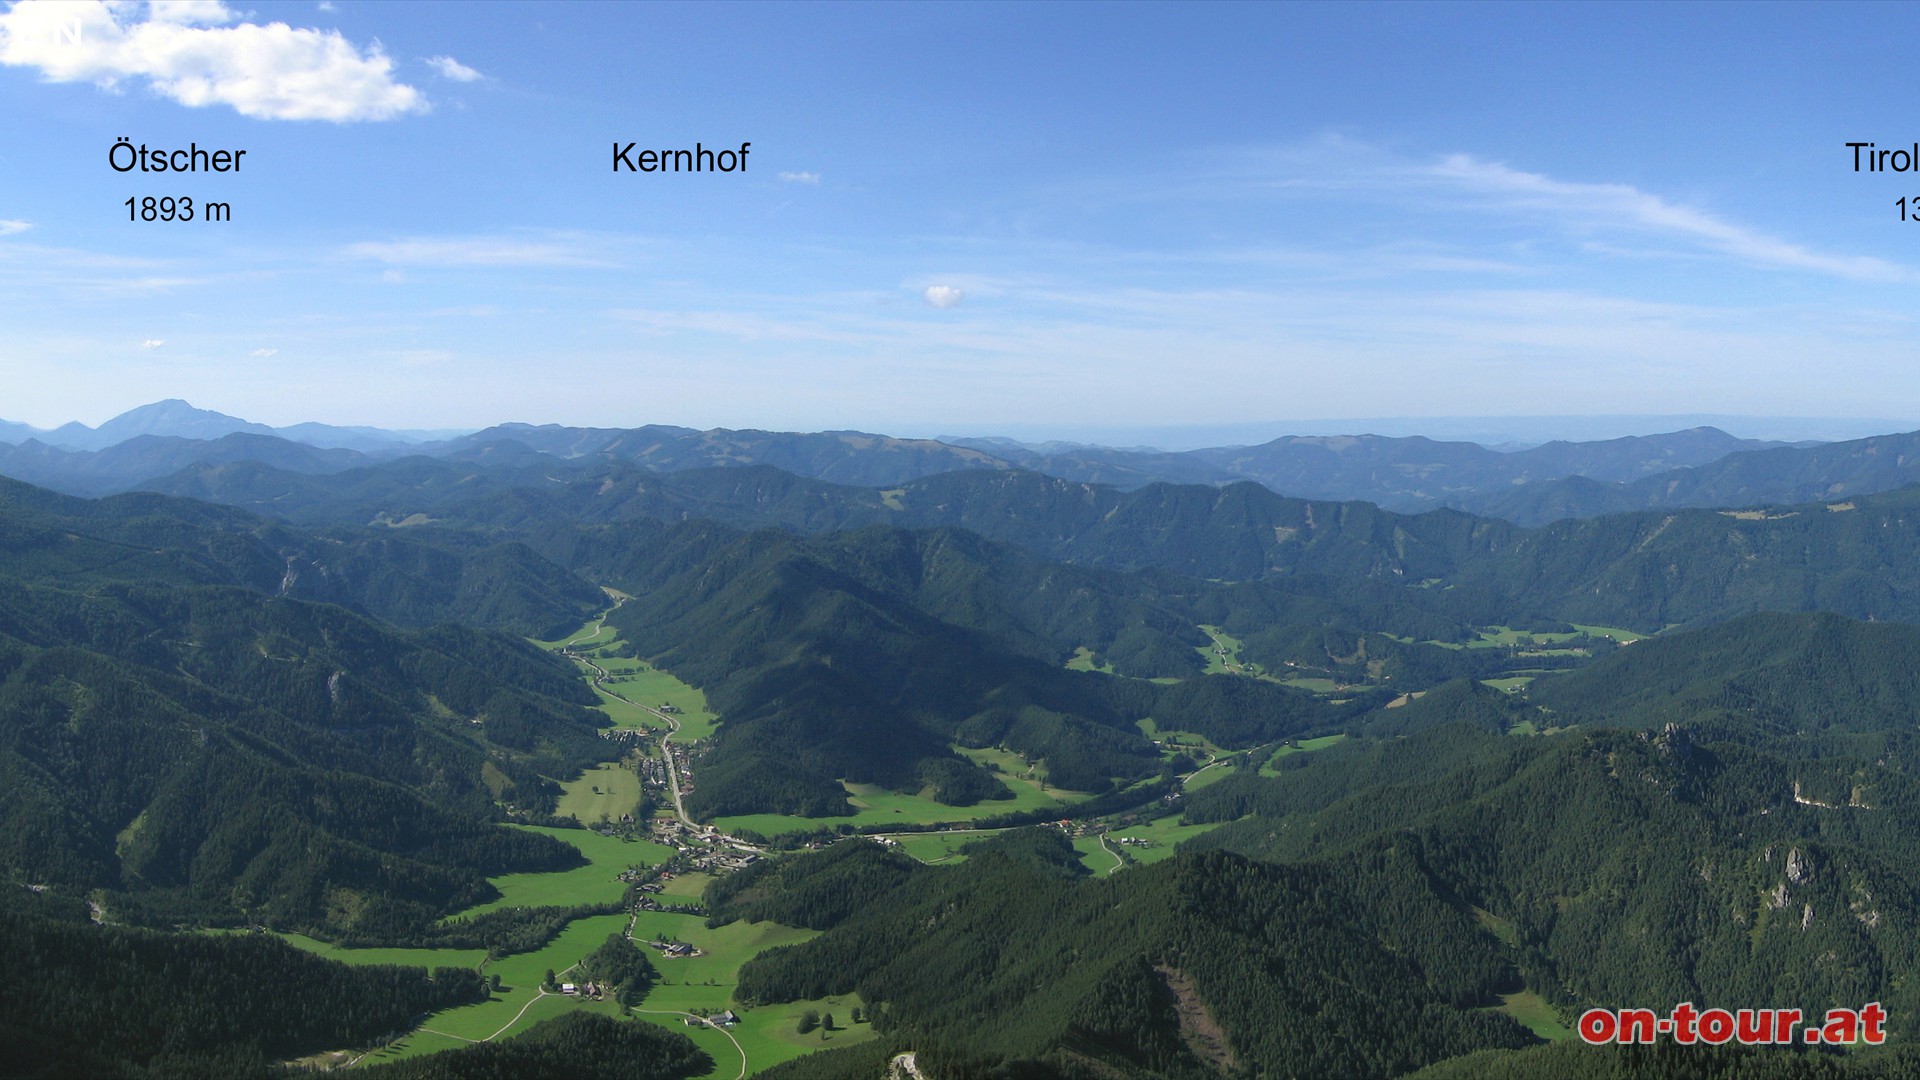 Ein herrlicher Panoramablick vom Gipfel. Im Nordwestlichen Talbecken liegt Kernhof. Links im Hintergrund erhebt sich der tscher.